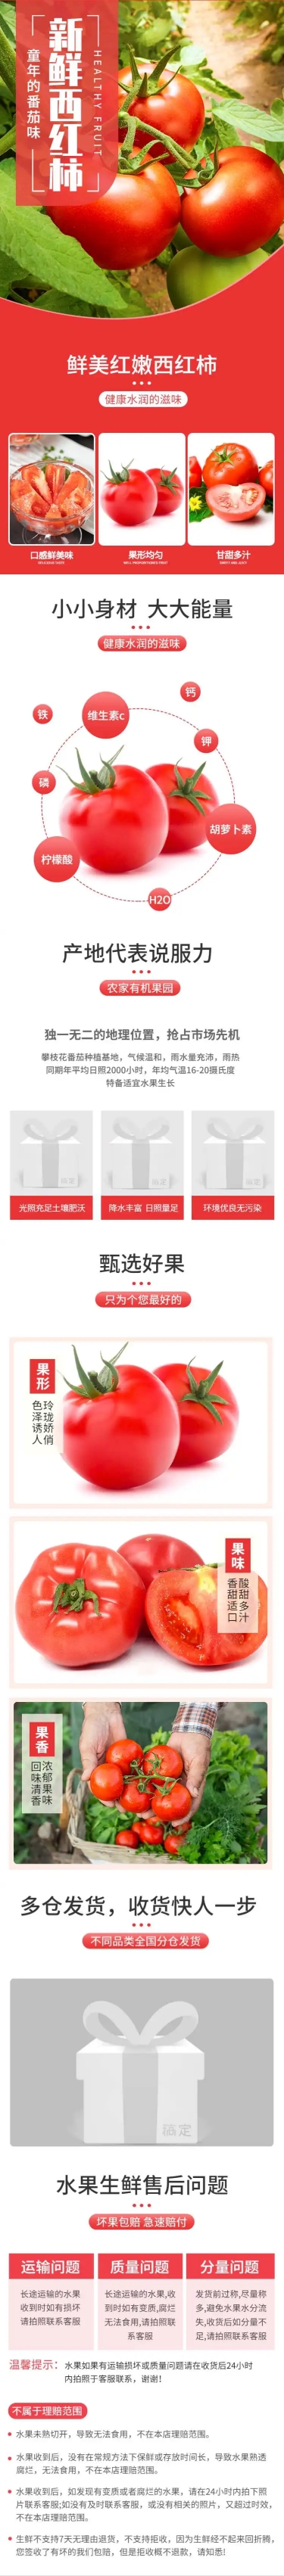 食品生鲜蔬菜西红柿详情页预览效果